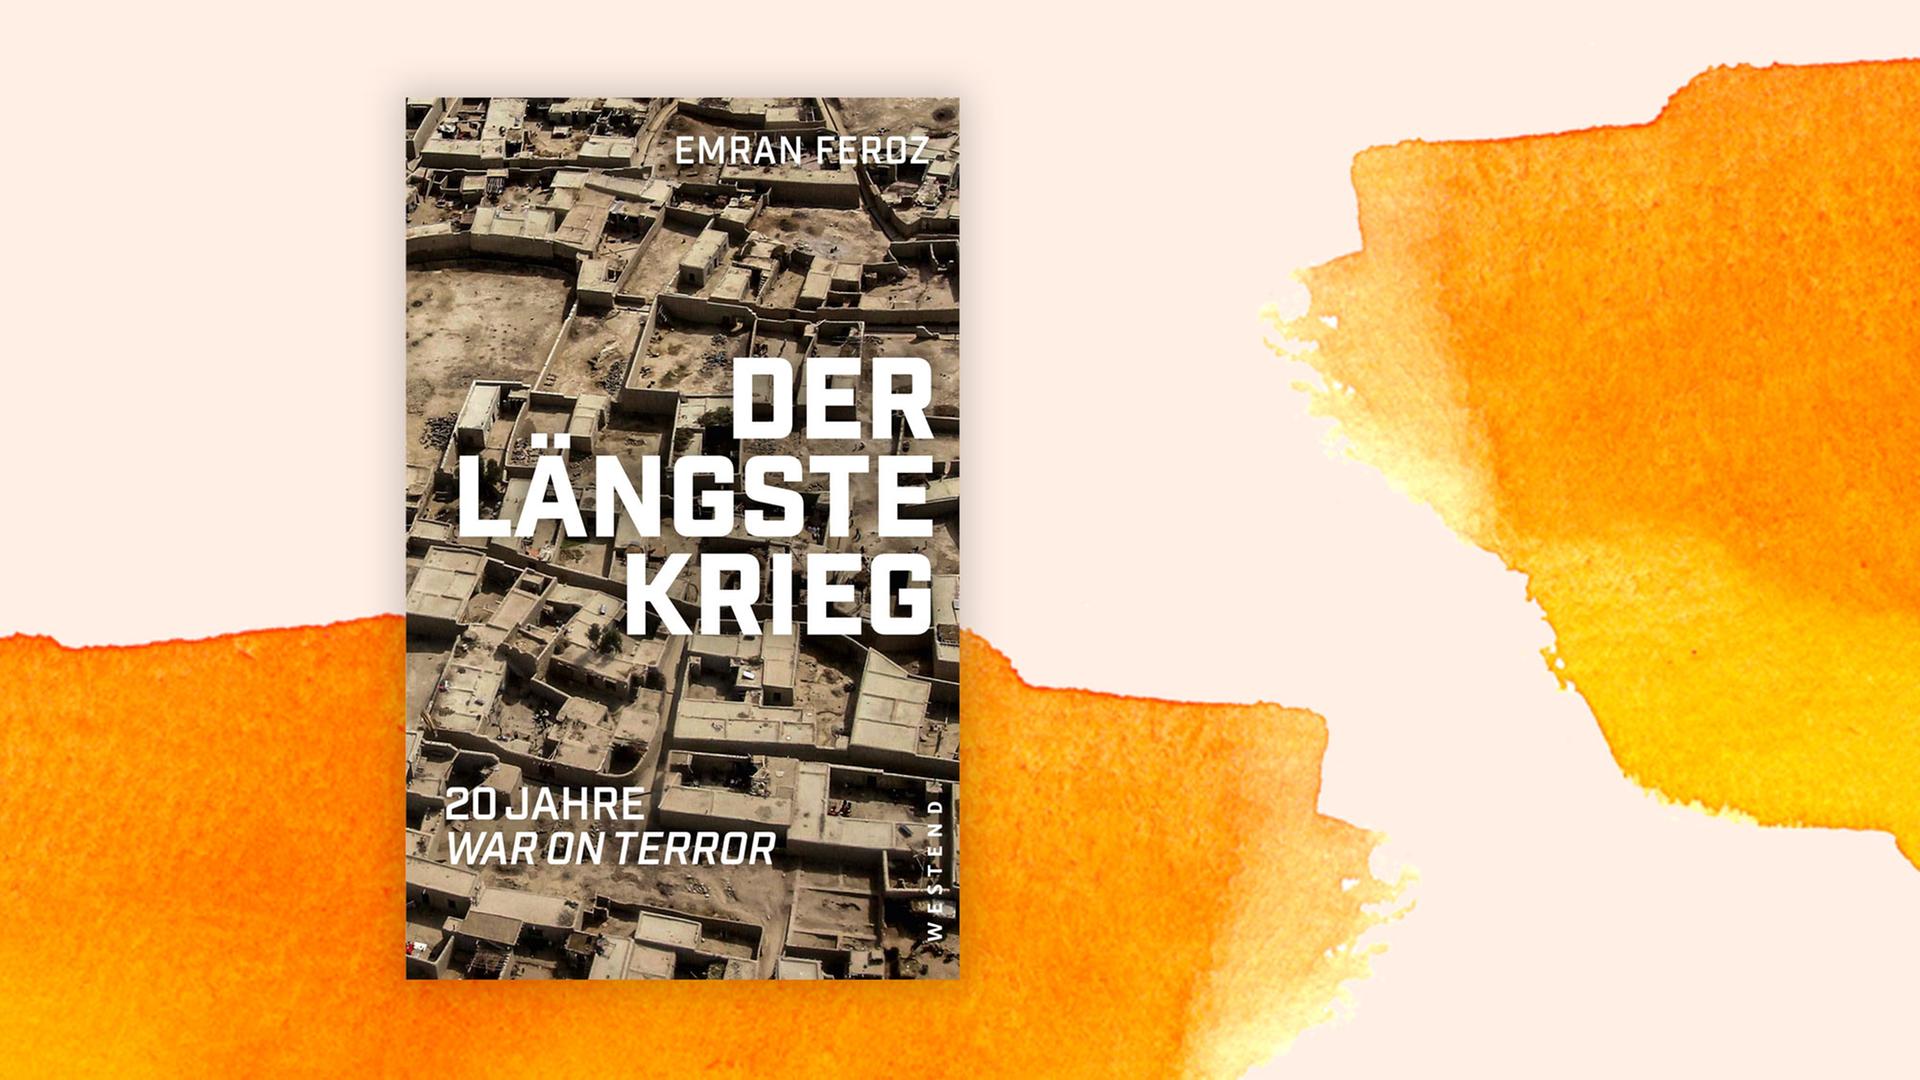 Buchcover zu Emran Feroz: "Der längste Krieg. 20 Jahre War on Terror"